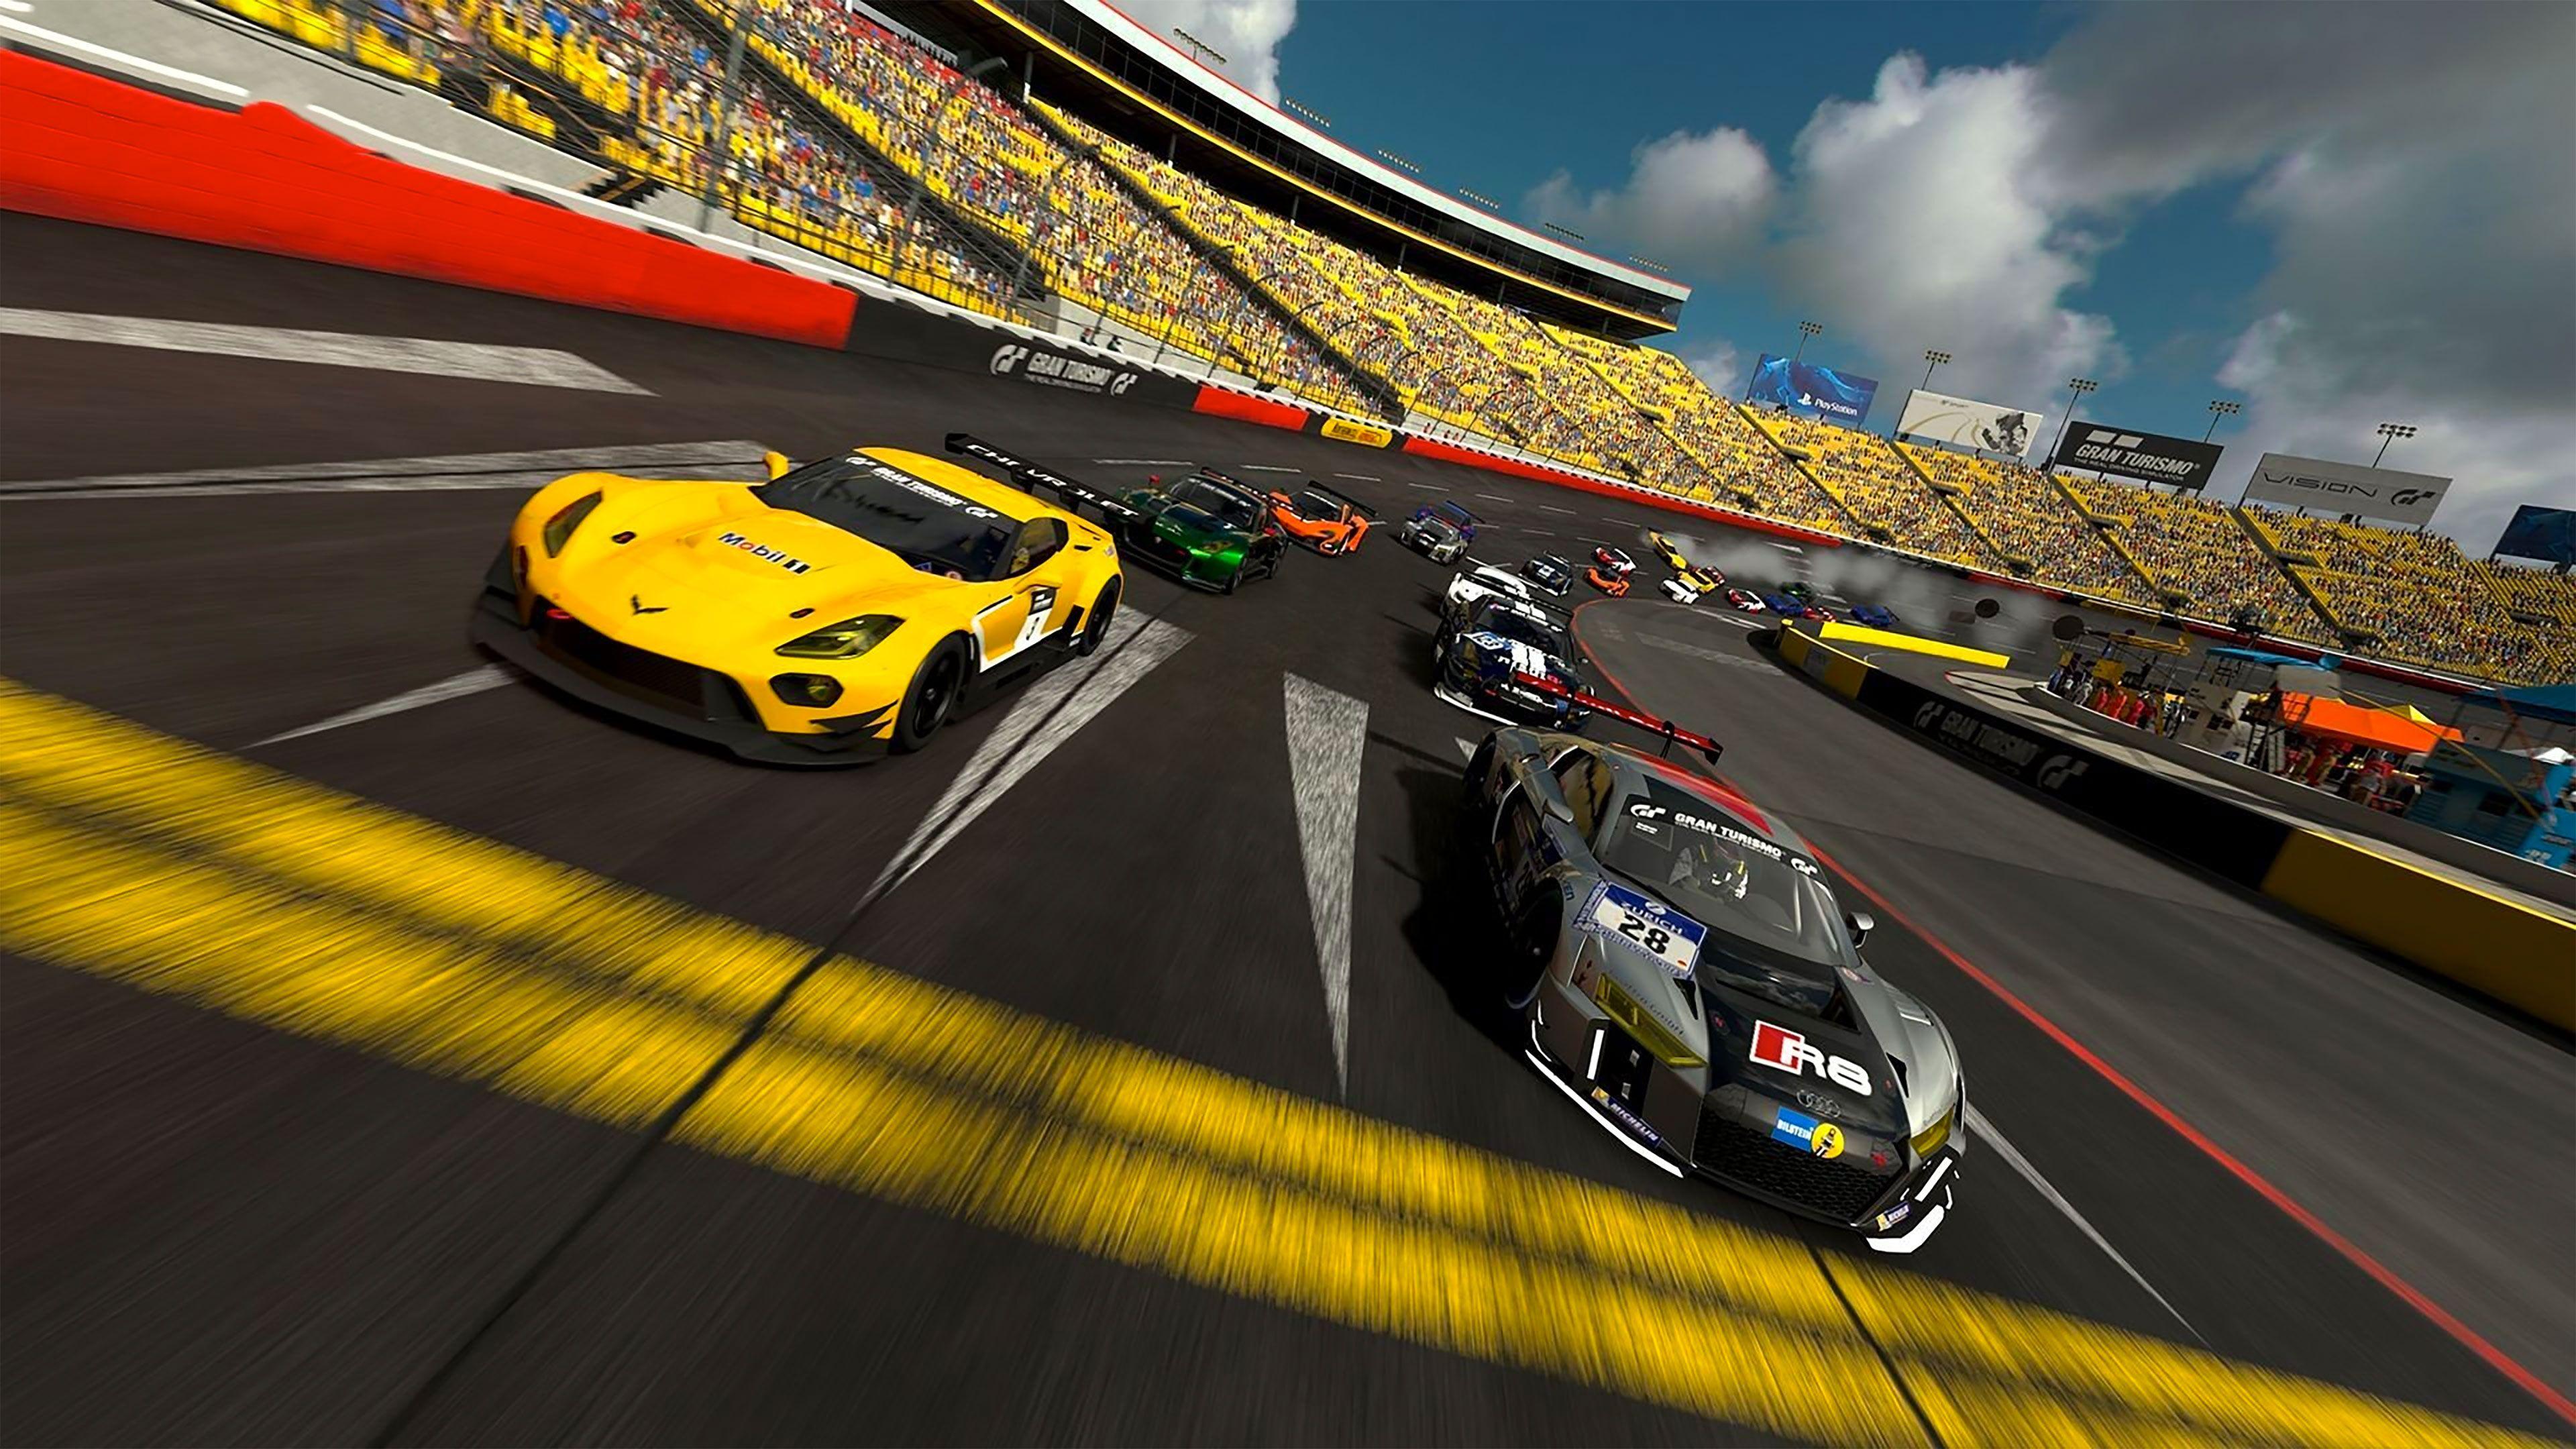 Fondos de Pantalla Gran Turismo 5 Juegos descargar imagenes